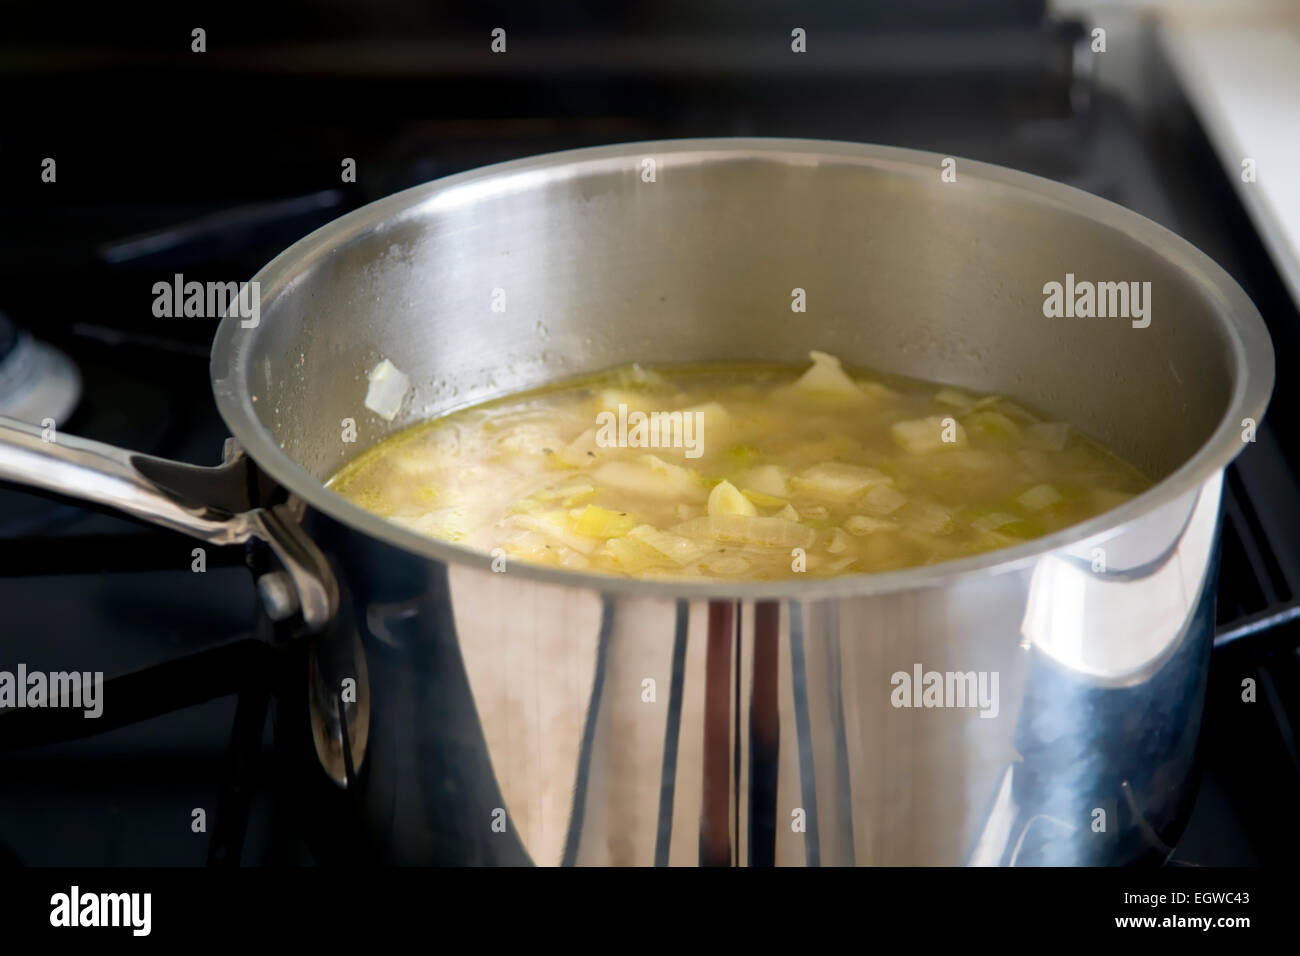 Saucepan of homemade leek and potato soup cooking on stove Stock Photo